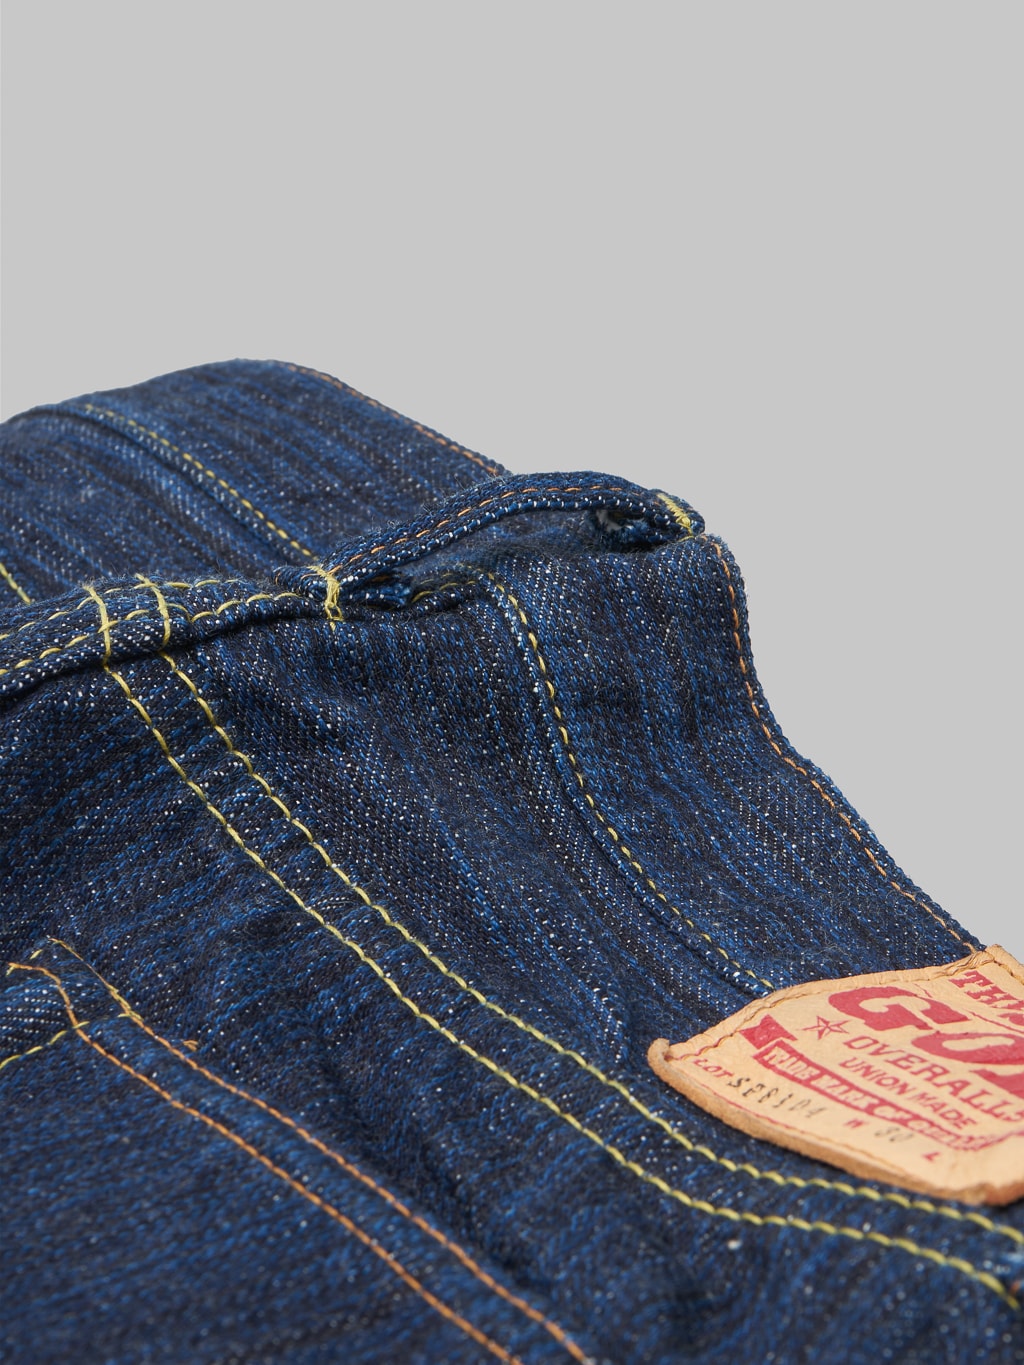 The Strike Gold 8104 Shower Slub jeans belt loop